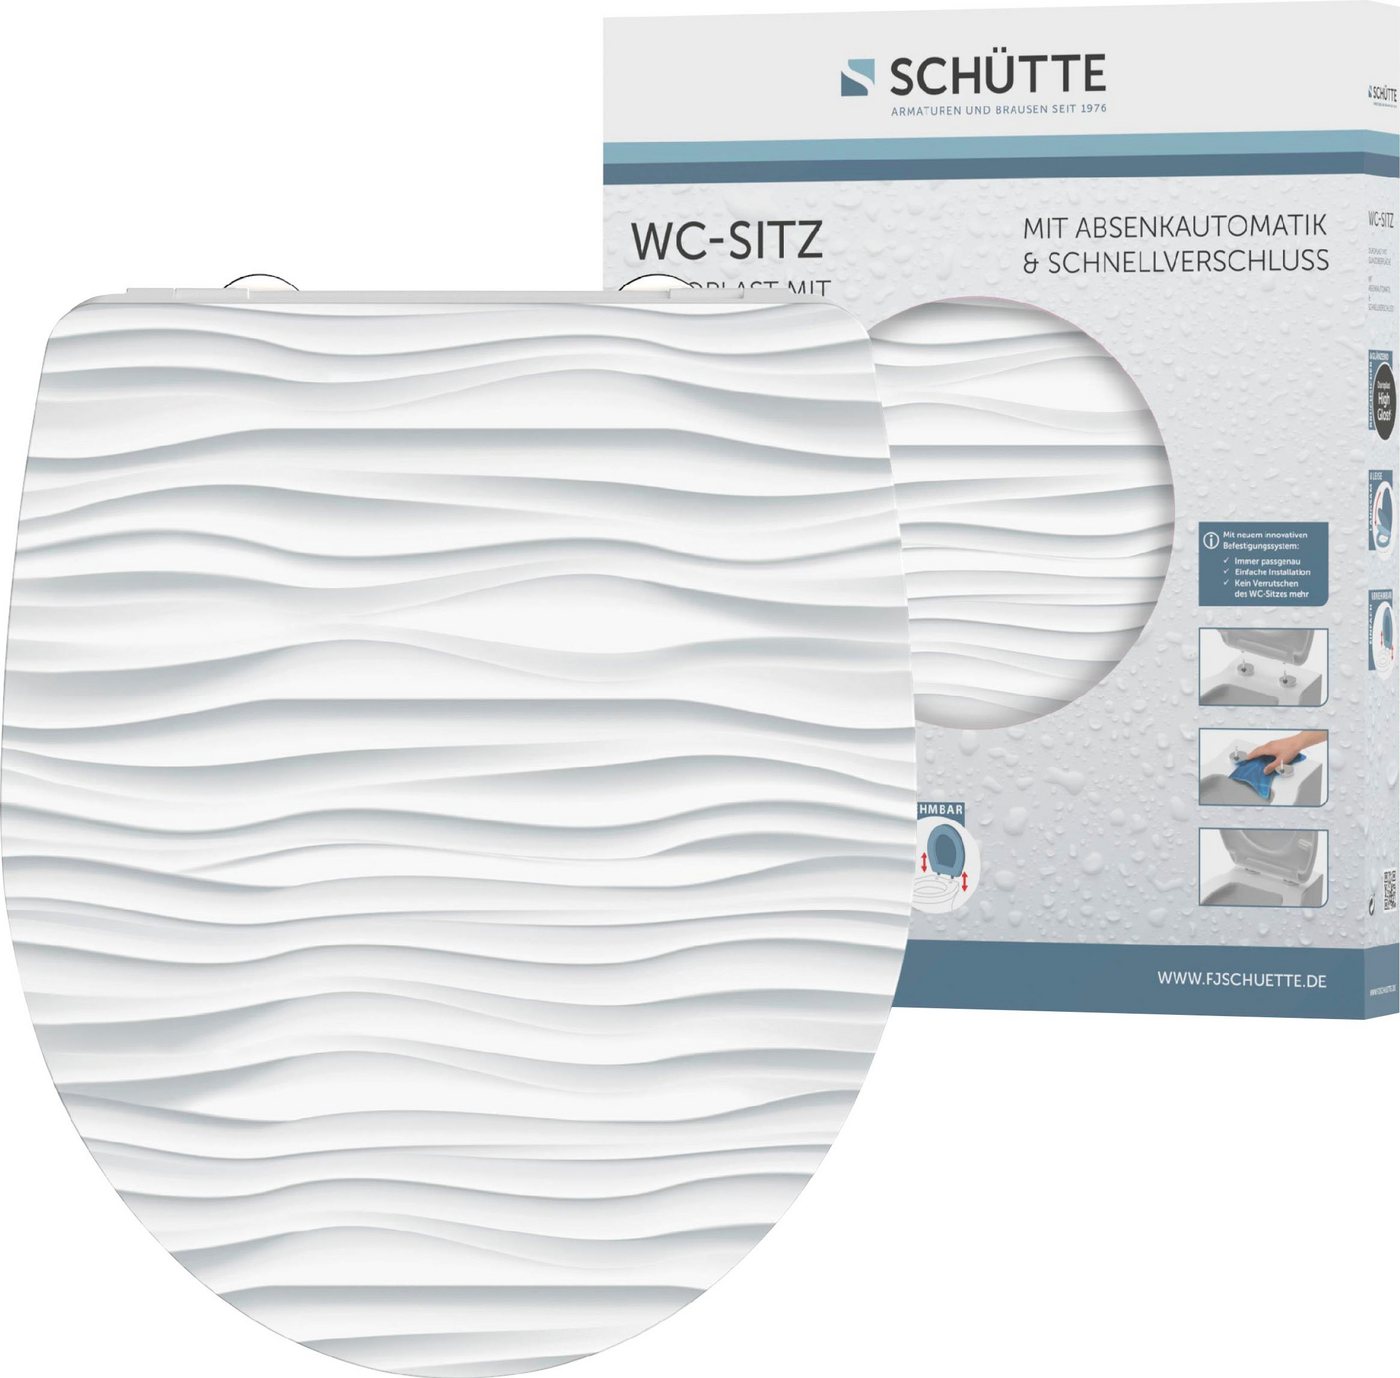 Schütte WC-Sitz White Wave, Duroplast, mit Absenkautomatik und Schnellverschluss, High Gloss von Schütte